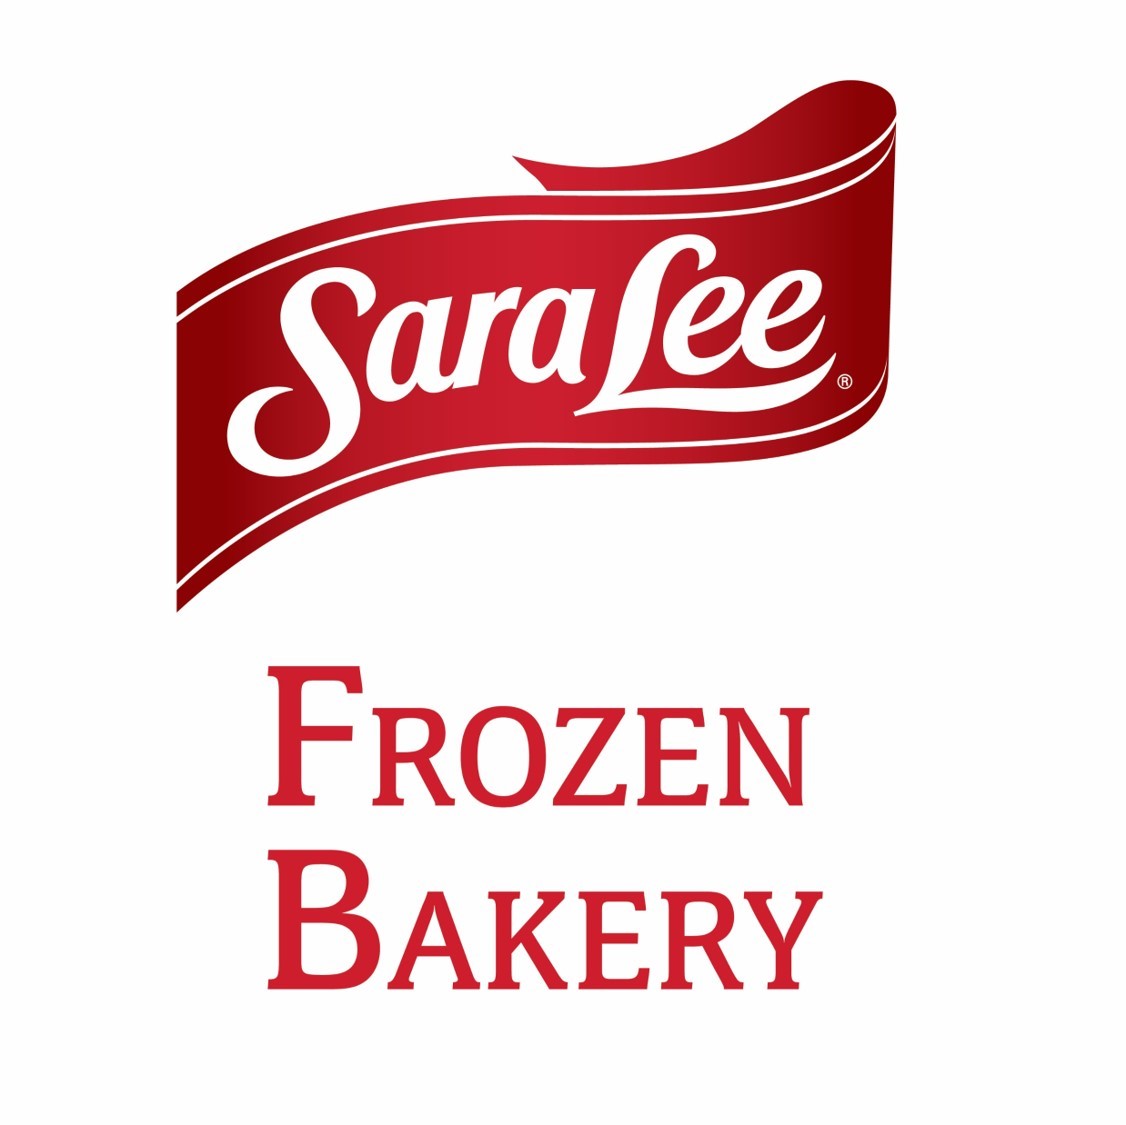 Sara Lee® Frozen Bakery, Van